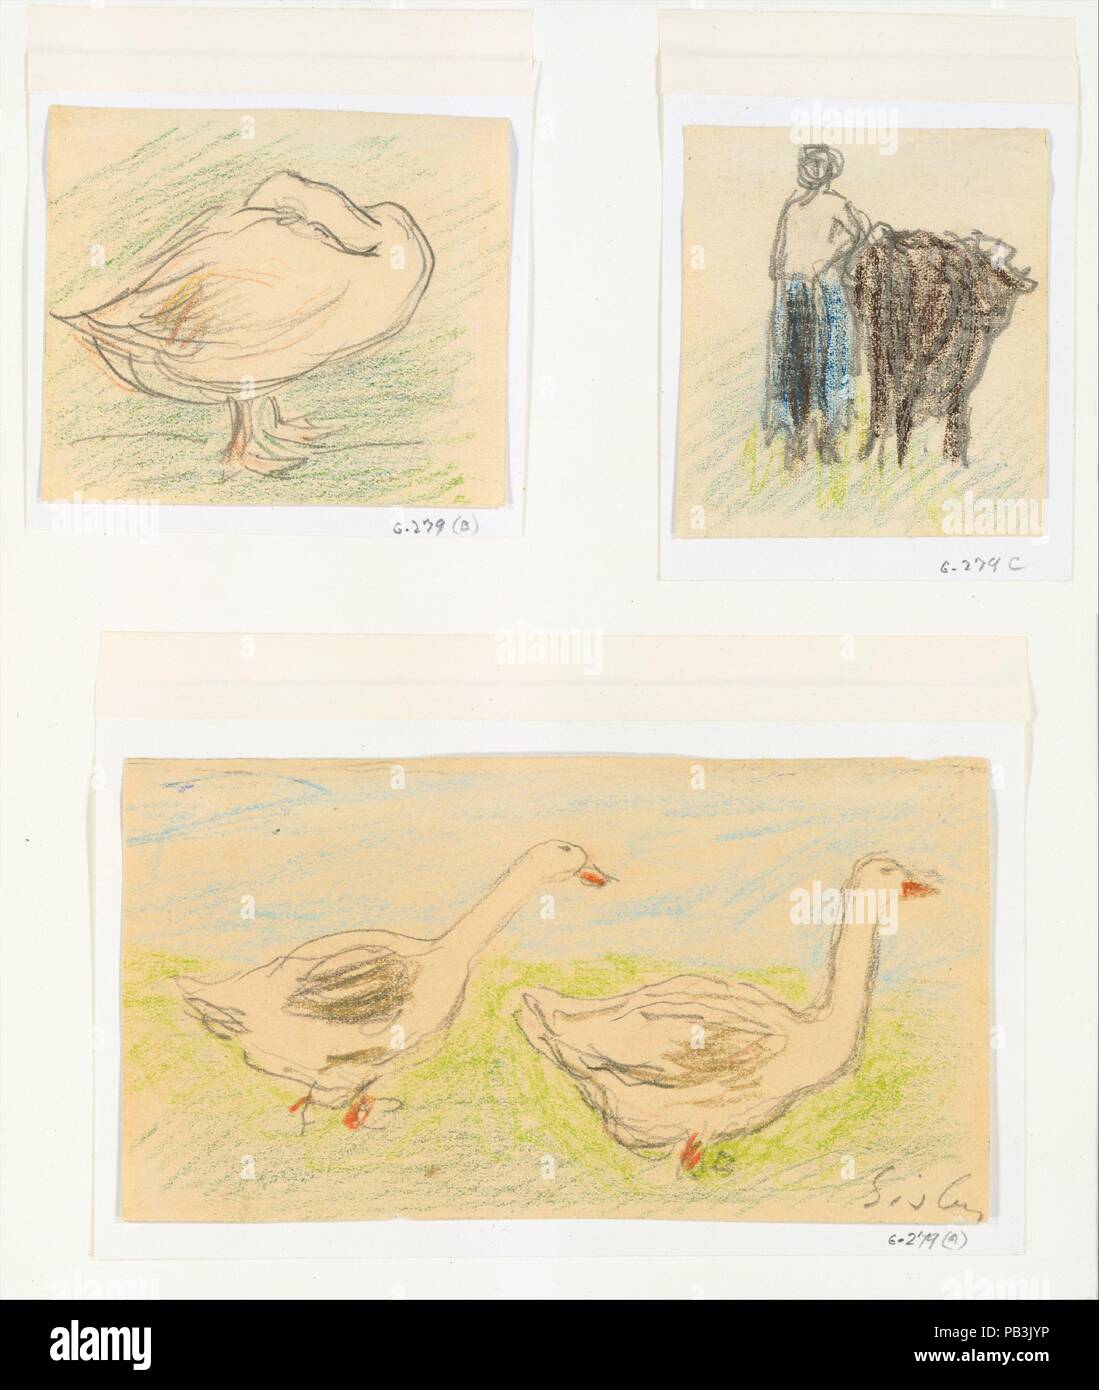 Drei Sketches-Two Gänse Wandern; Bäuerin mit einer Kuh; Gans verstecken den Kopf. Artist: Alfred Sisley (Britisch, Paris 1839-1899 Moret-sur-Loing). Abmessungen: 2 3/4 x 5 1/8 in. (7 x 13 cm); 2 7/16 x 2 3/16 in. (6,2 x 5,5 cm); 2 3/8 x 2 3/4 in. (6 x 7 cm). Datum: 1895-97. Museum: Metropolitan Museum of Art, New York, USA. Stockfoto